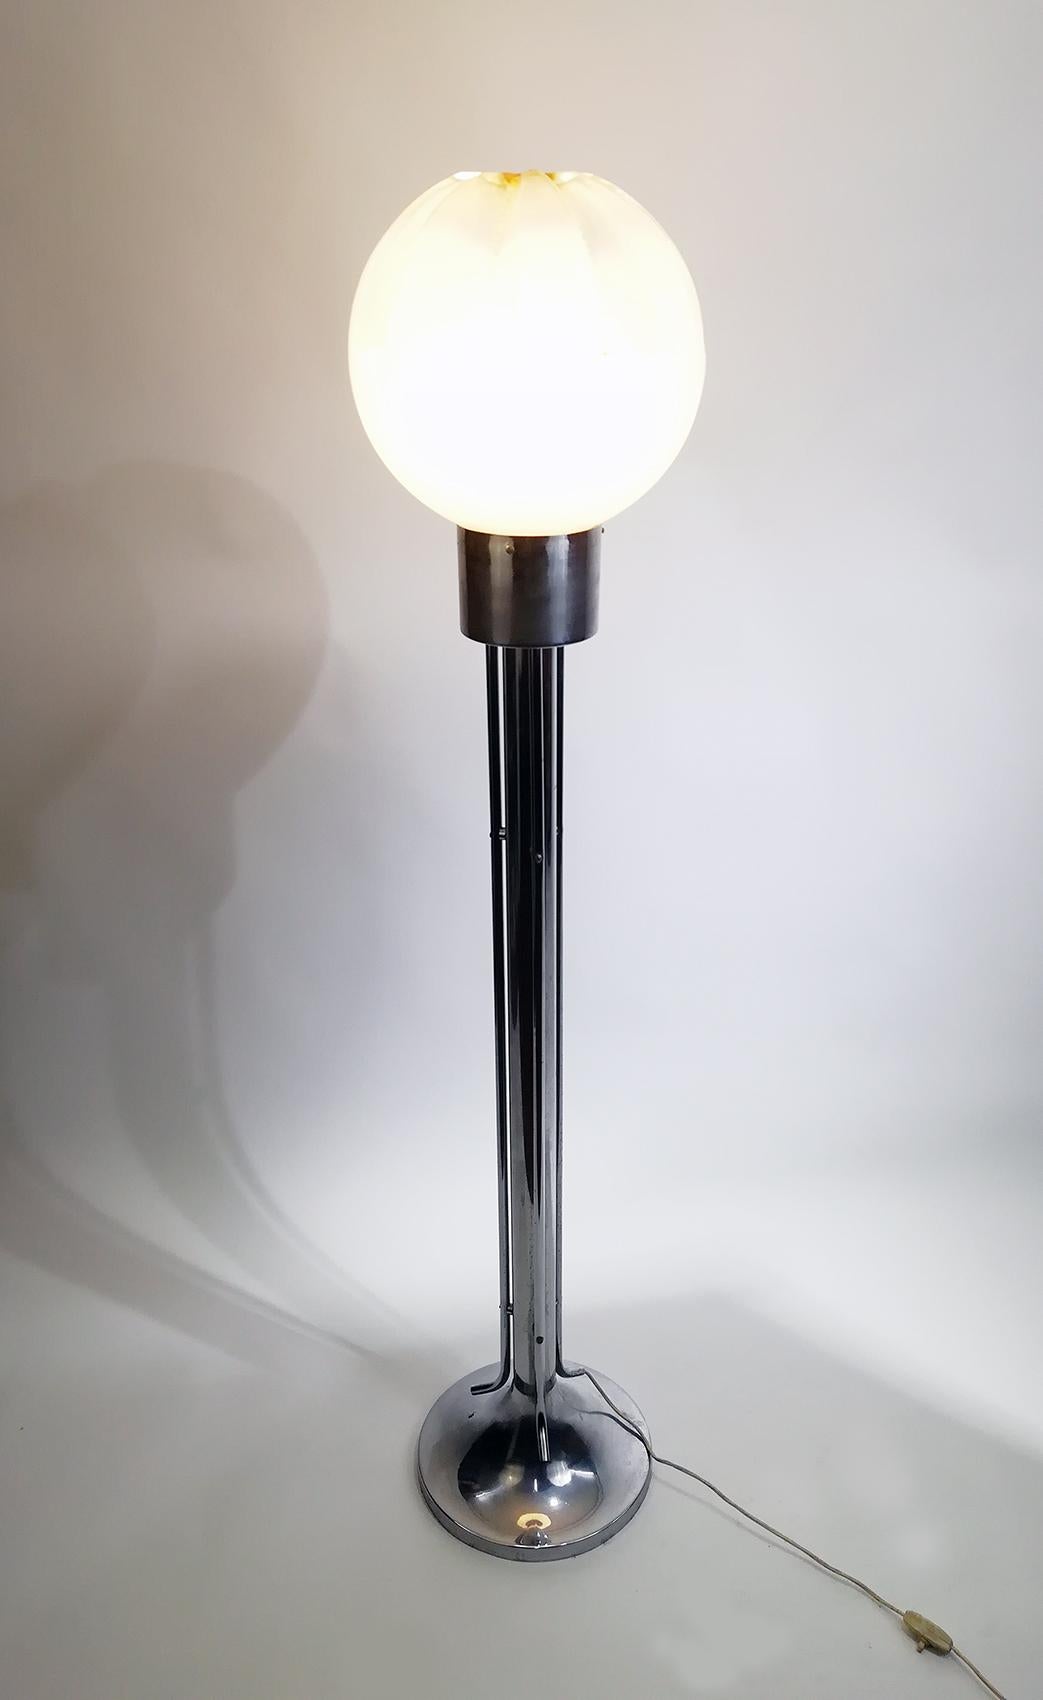 Sublime lampadaire réalisé par A.V. Mazzega avec une grande coupe en verre soufflé de couleur très impressionnante et une base en acier chromé.
Ce lampadaire a un bel effet lumineux lorsqu'il est allumé.
Fabriqué au début des années